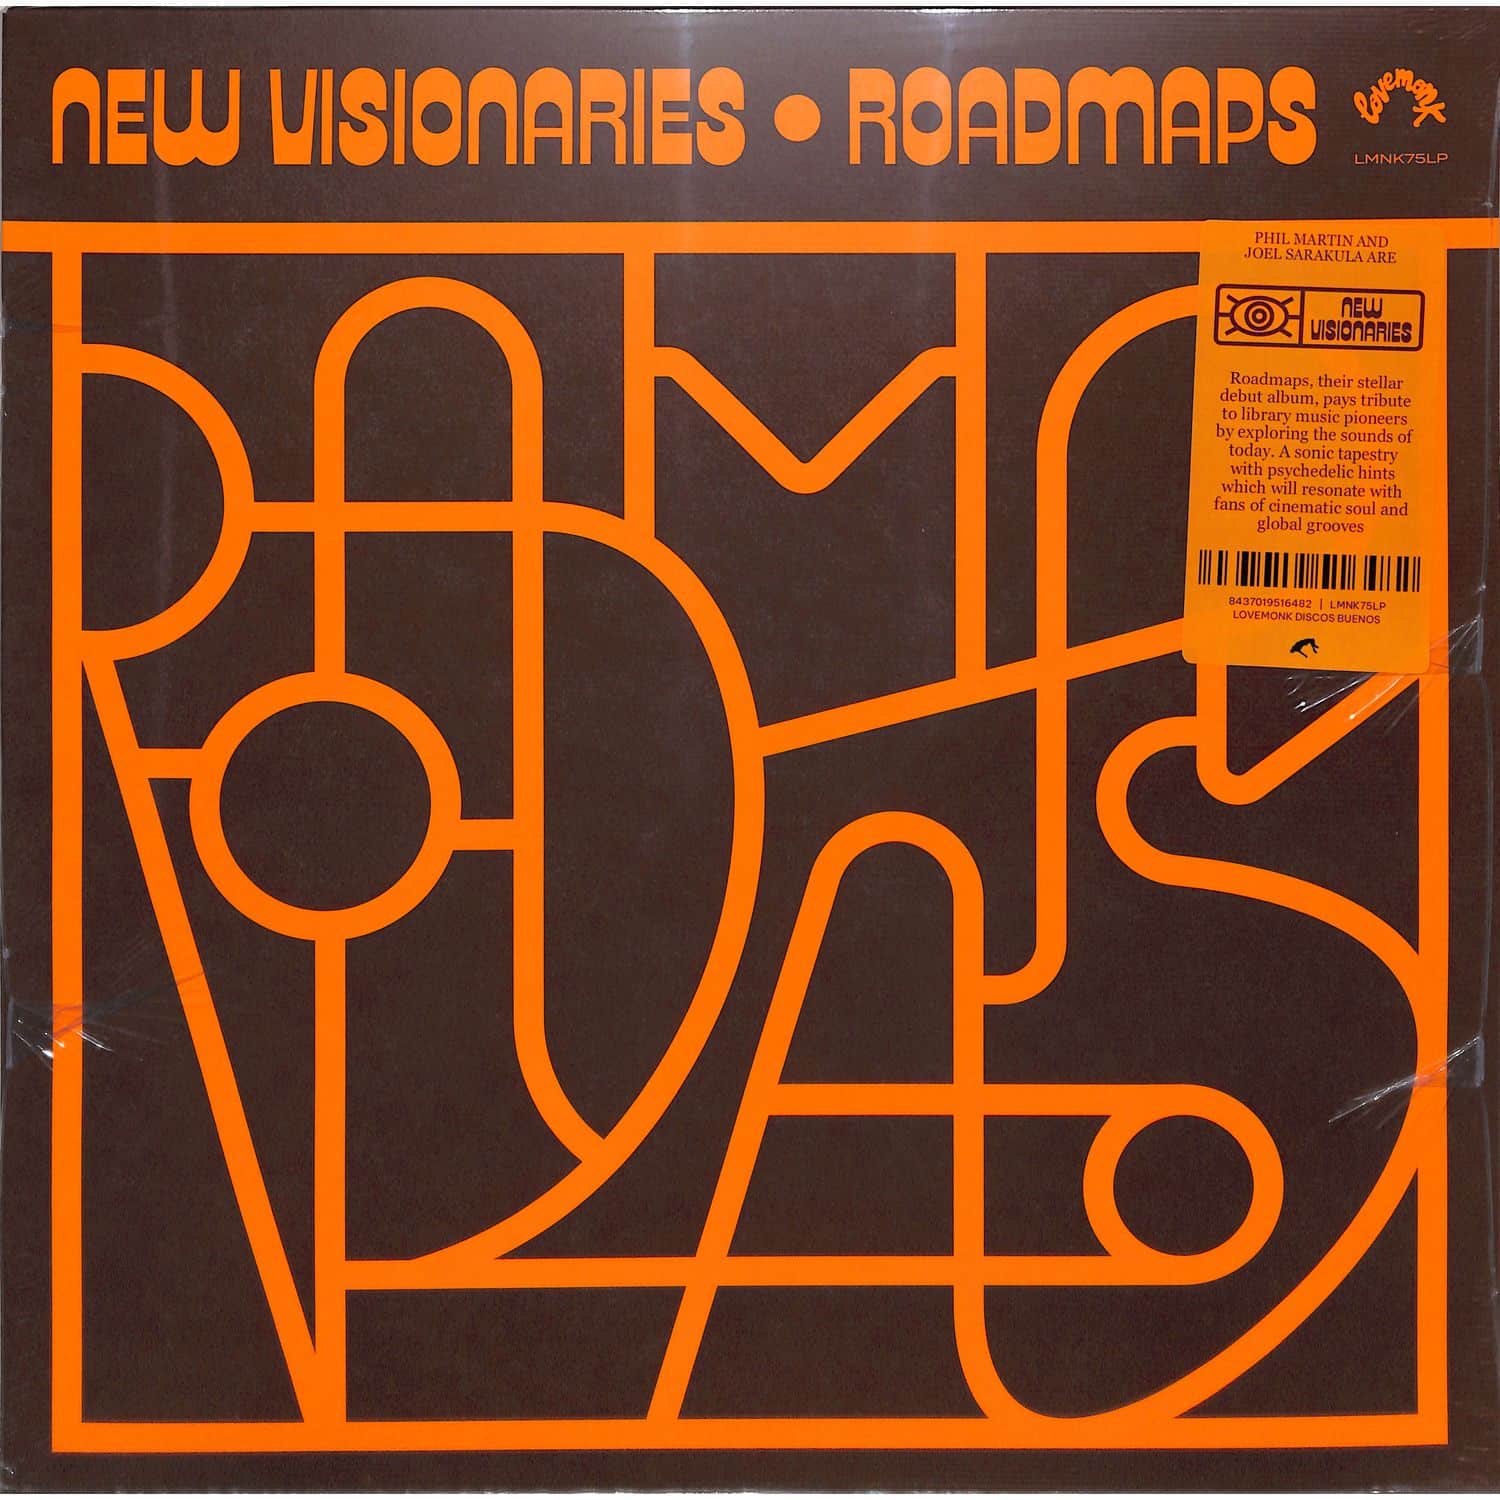 New Visionaries - ROADMAPS 